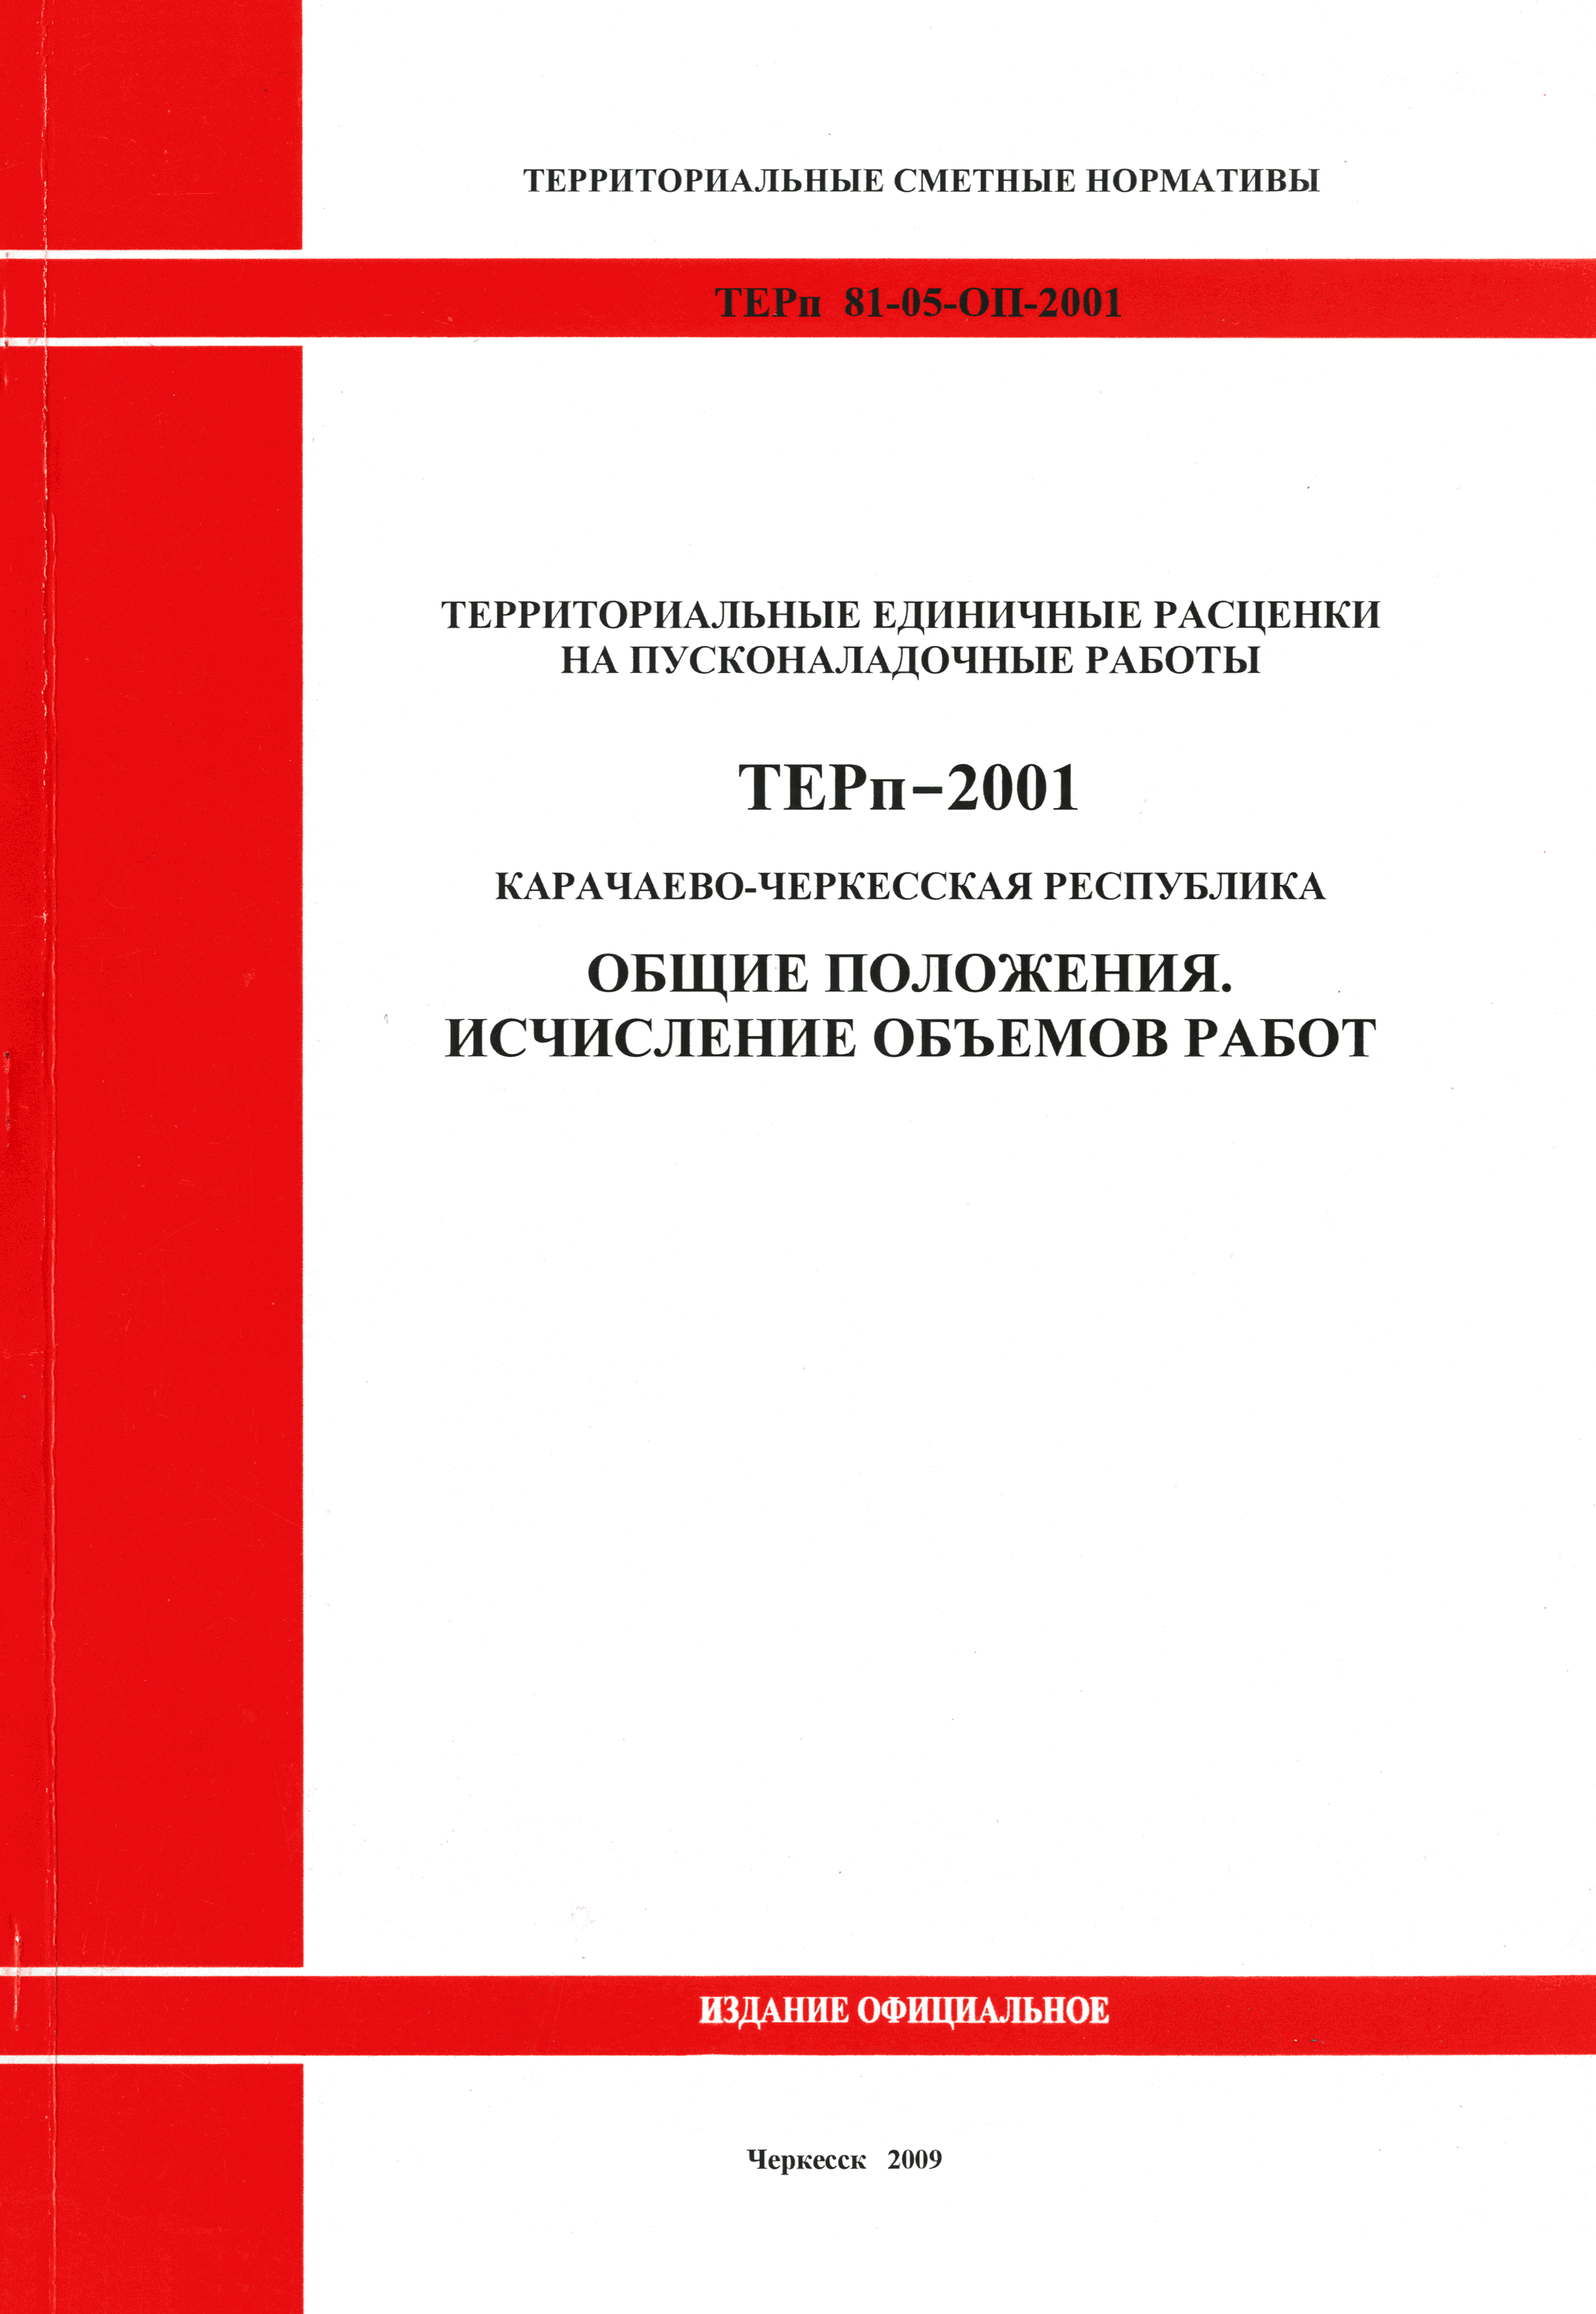 ТЕРп Карачаево-Черкесская Республика 2001-ОП